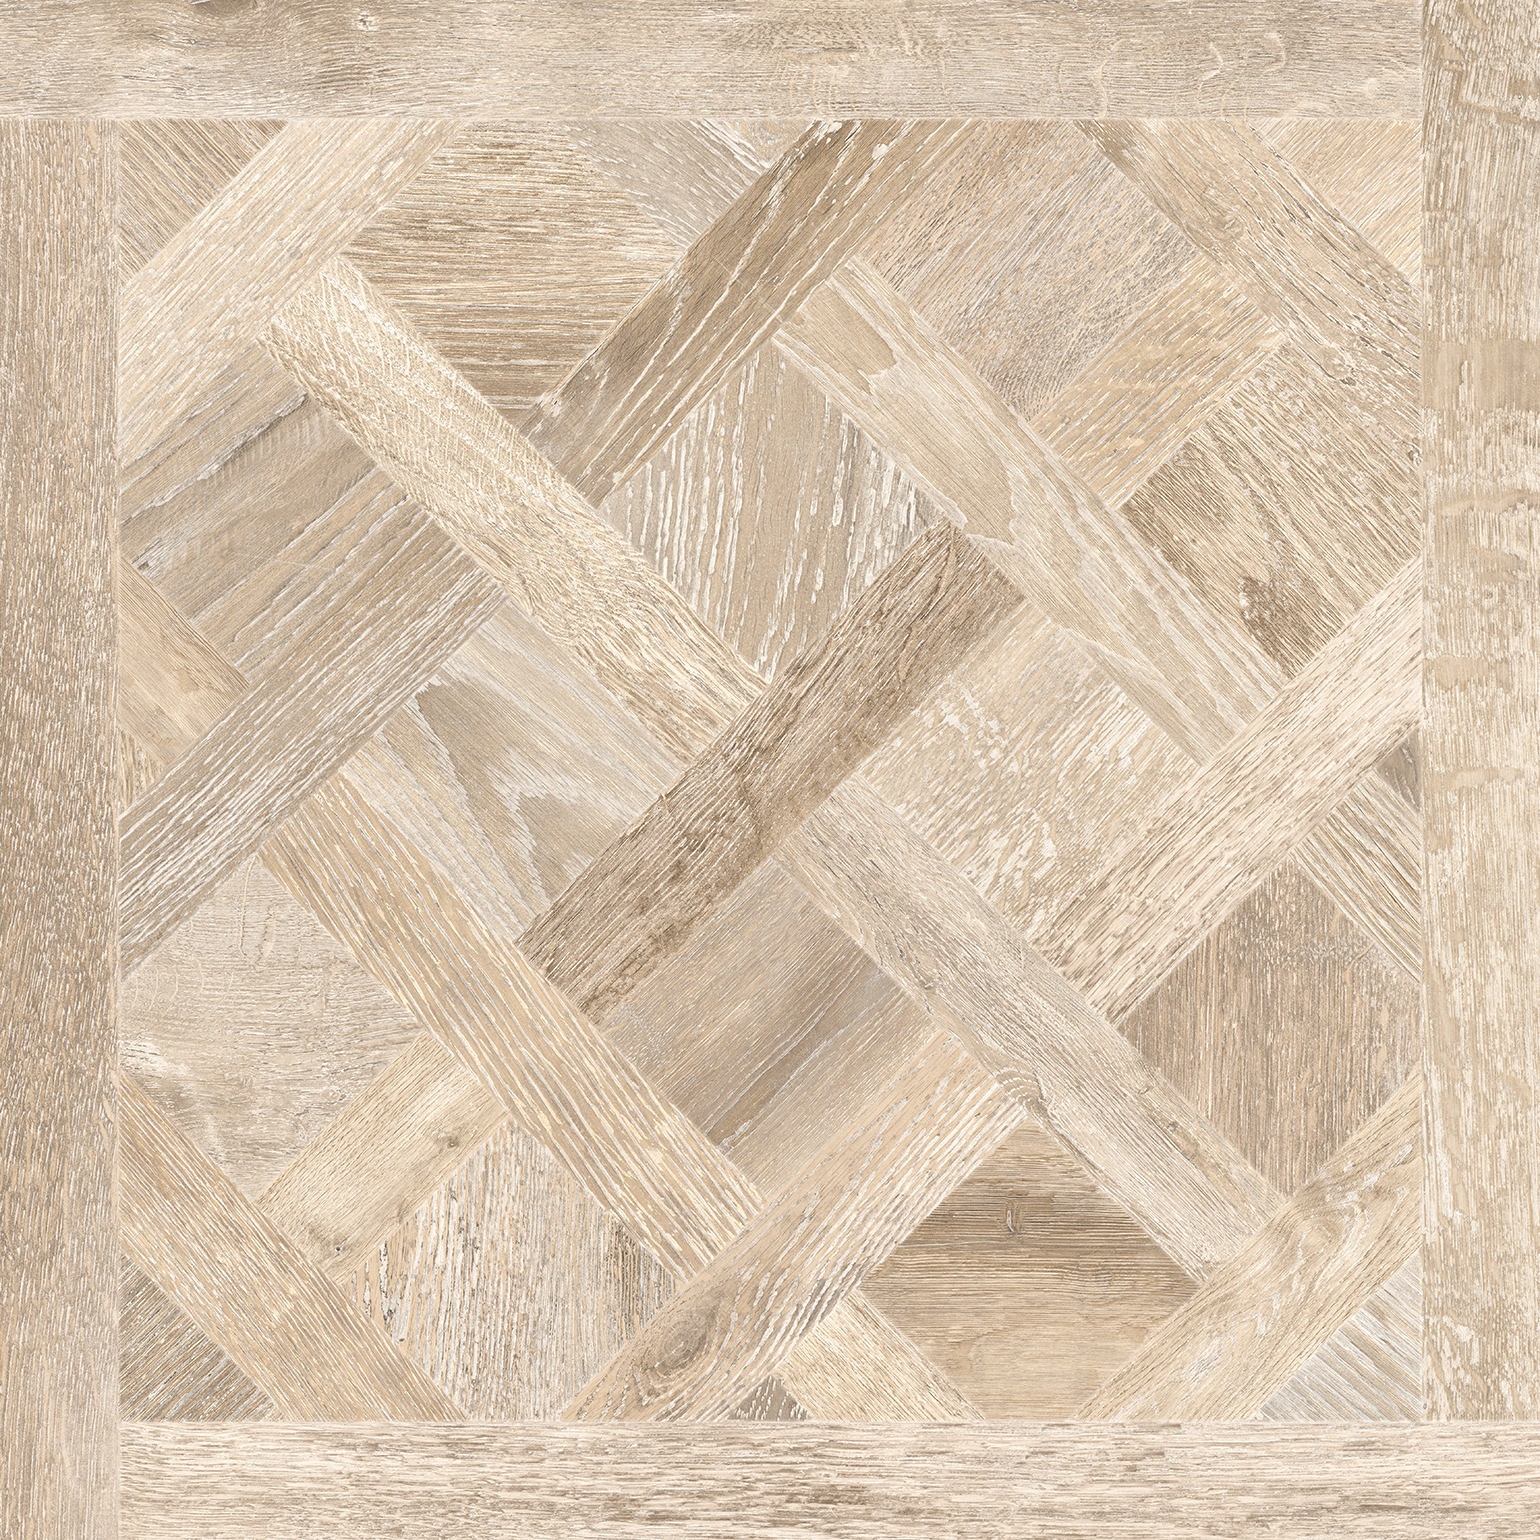 Opus 32x32 Blonde Décor Wood Look Porcelain Tile - SAMPLES